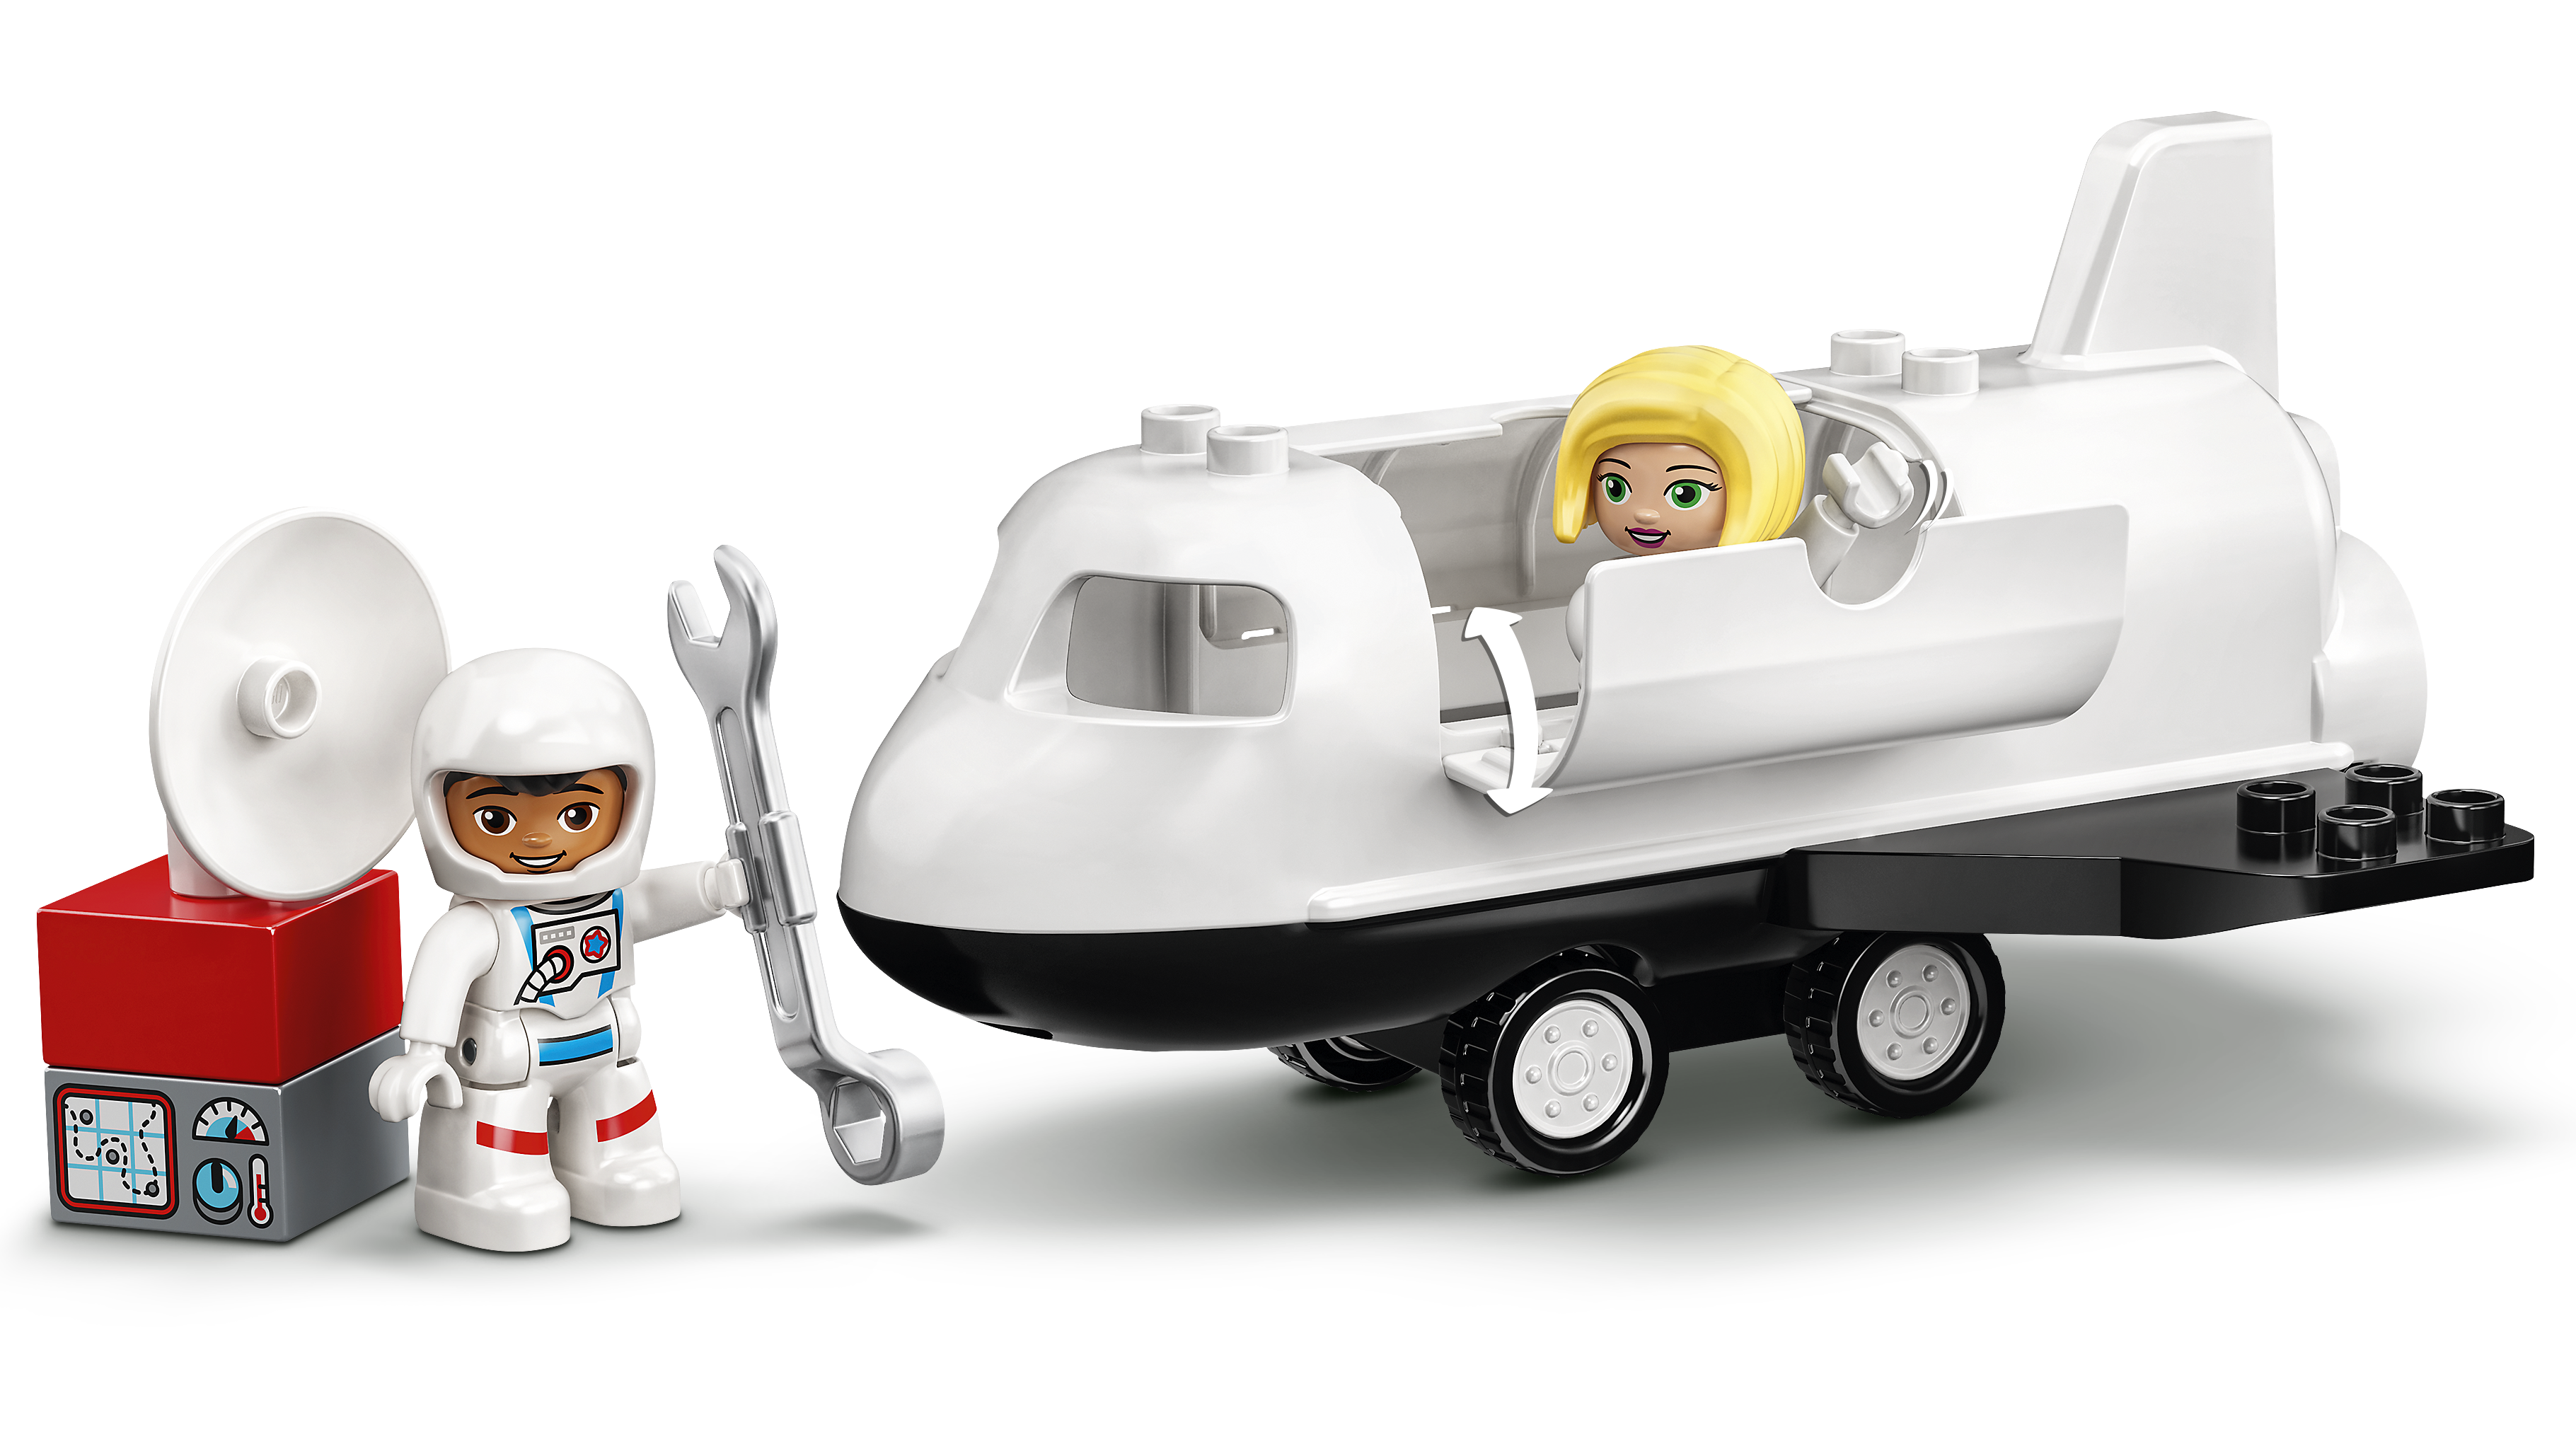 ~ nuevo ~ Lego Duplo 10944 misión de transbordador espacial 23 piezas 2 años